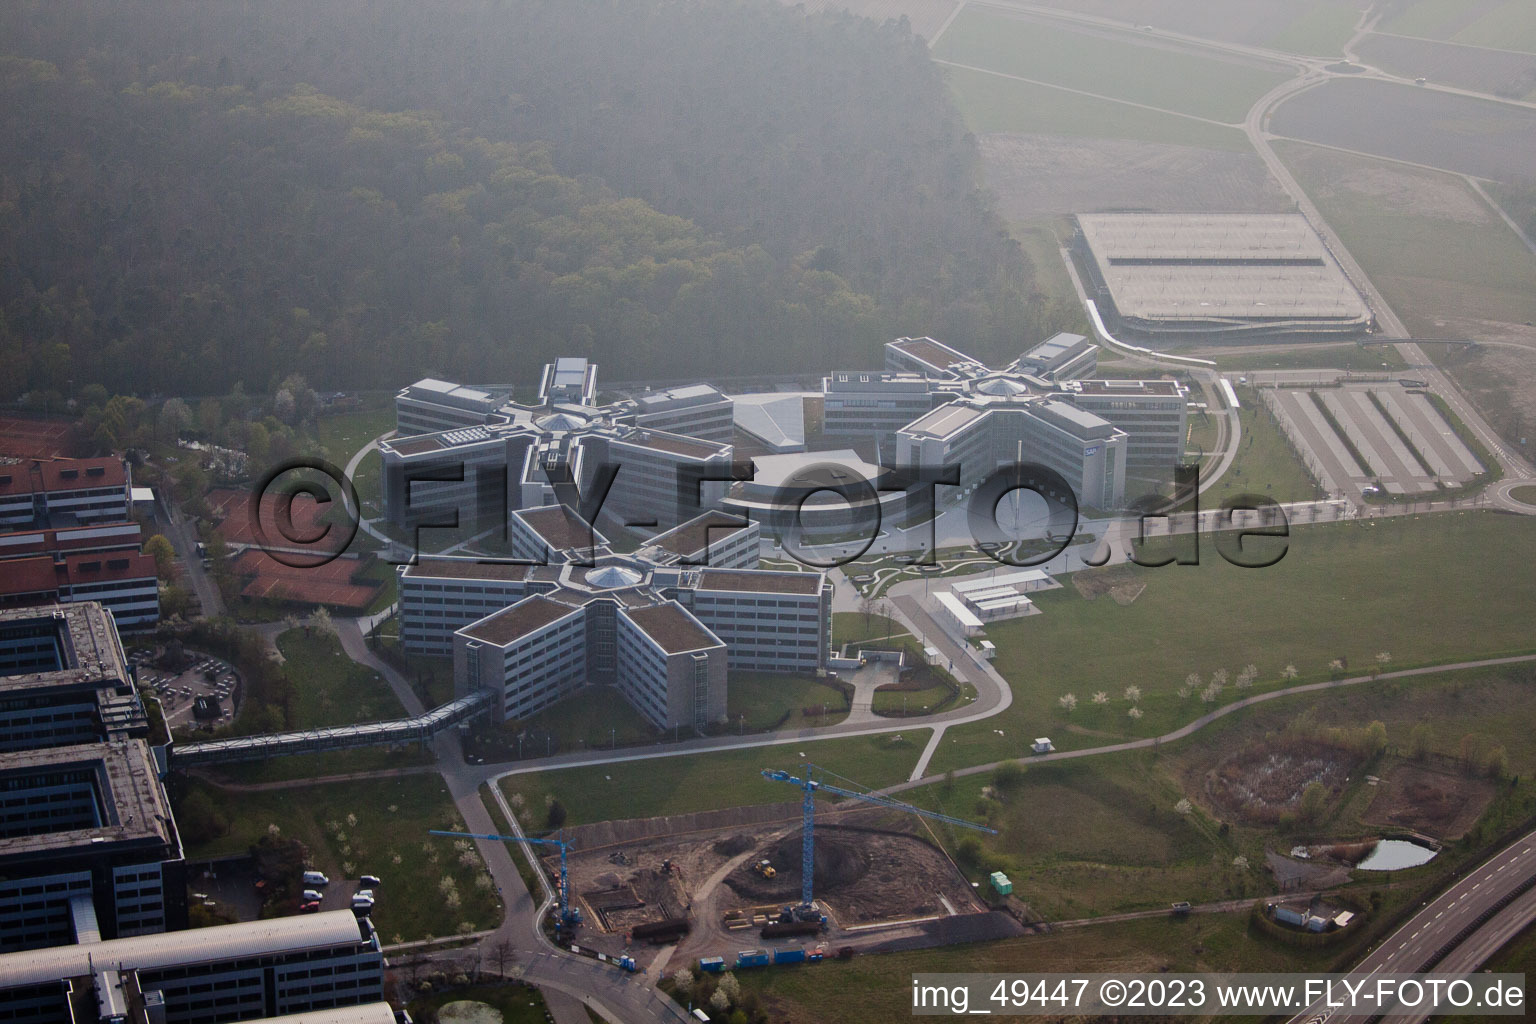 Vue aérienne de Zone industrielle, SAP AG à Walldorf dans le département Bade-Wurtemberg, Allemagne